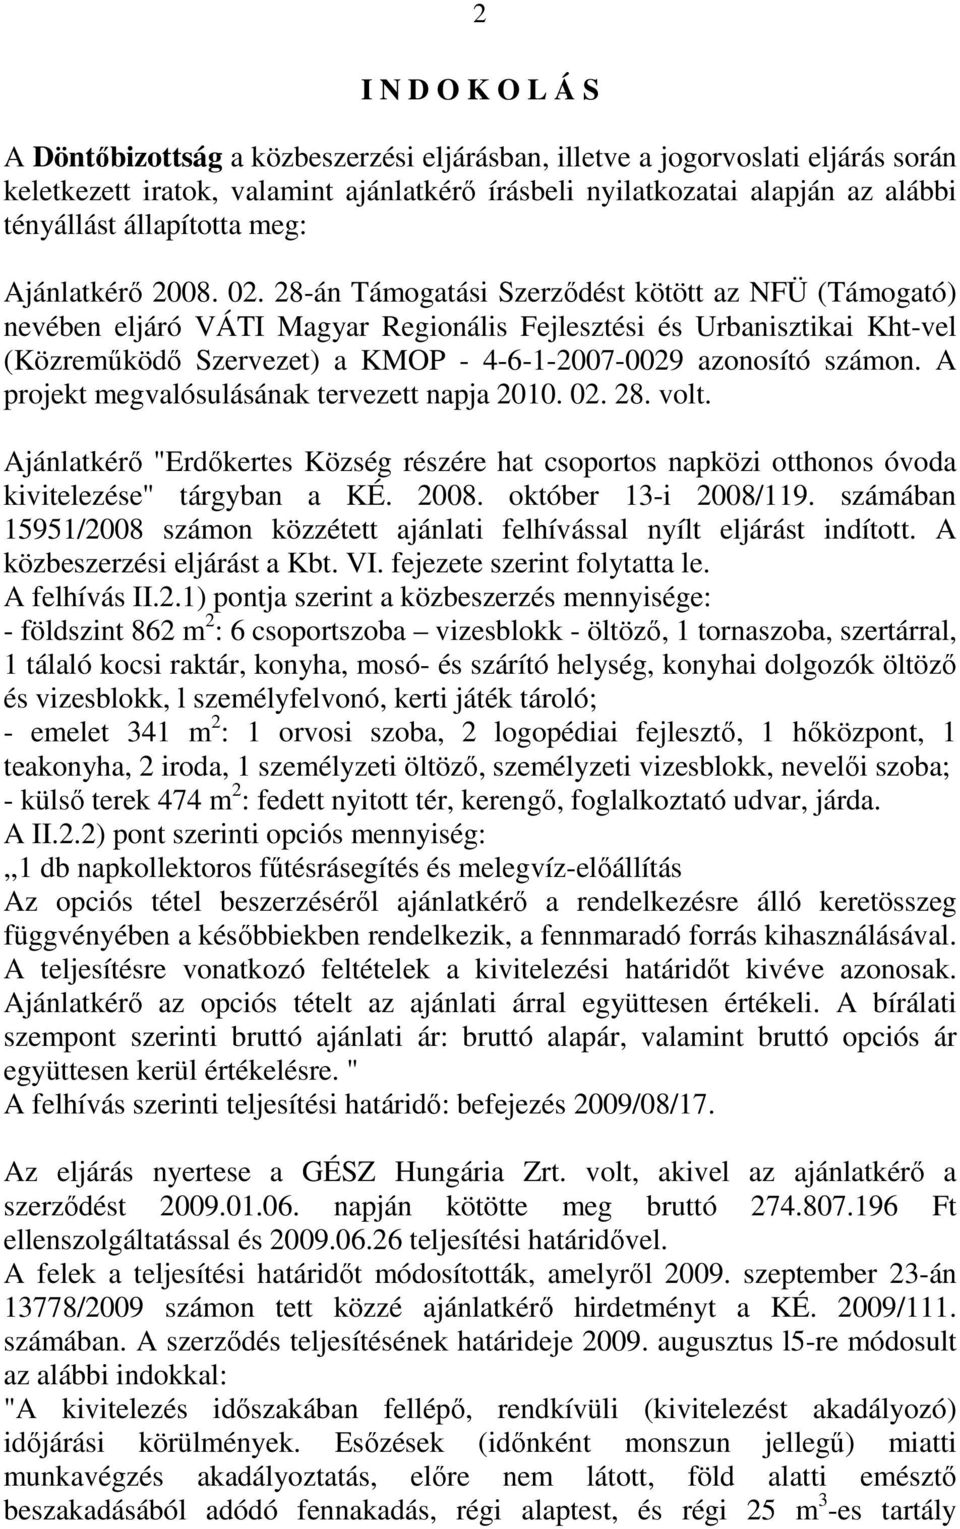 28-án Támogatási Szerződést kötött az NFÜ (Támogató) nevében eljáró VÁTI Magyar Regionális Fejlesztési és Urbanisztikai Kht-vel (Közreműködő Szervezet) a KMOP - 4-6-1-2007-0029 azonosító számon.